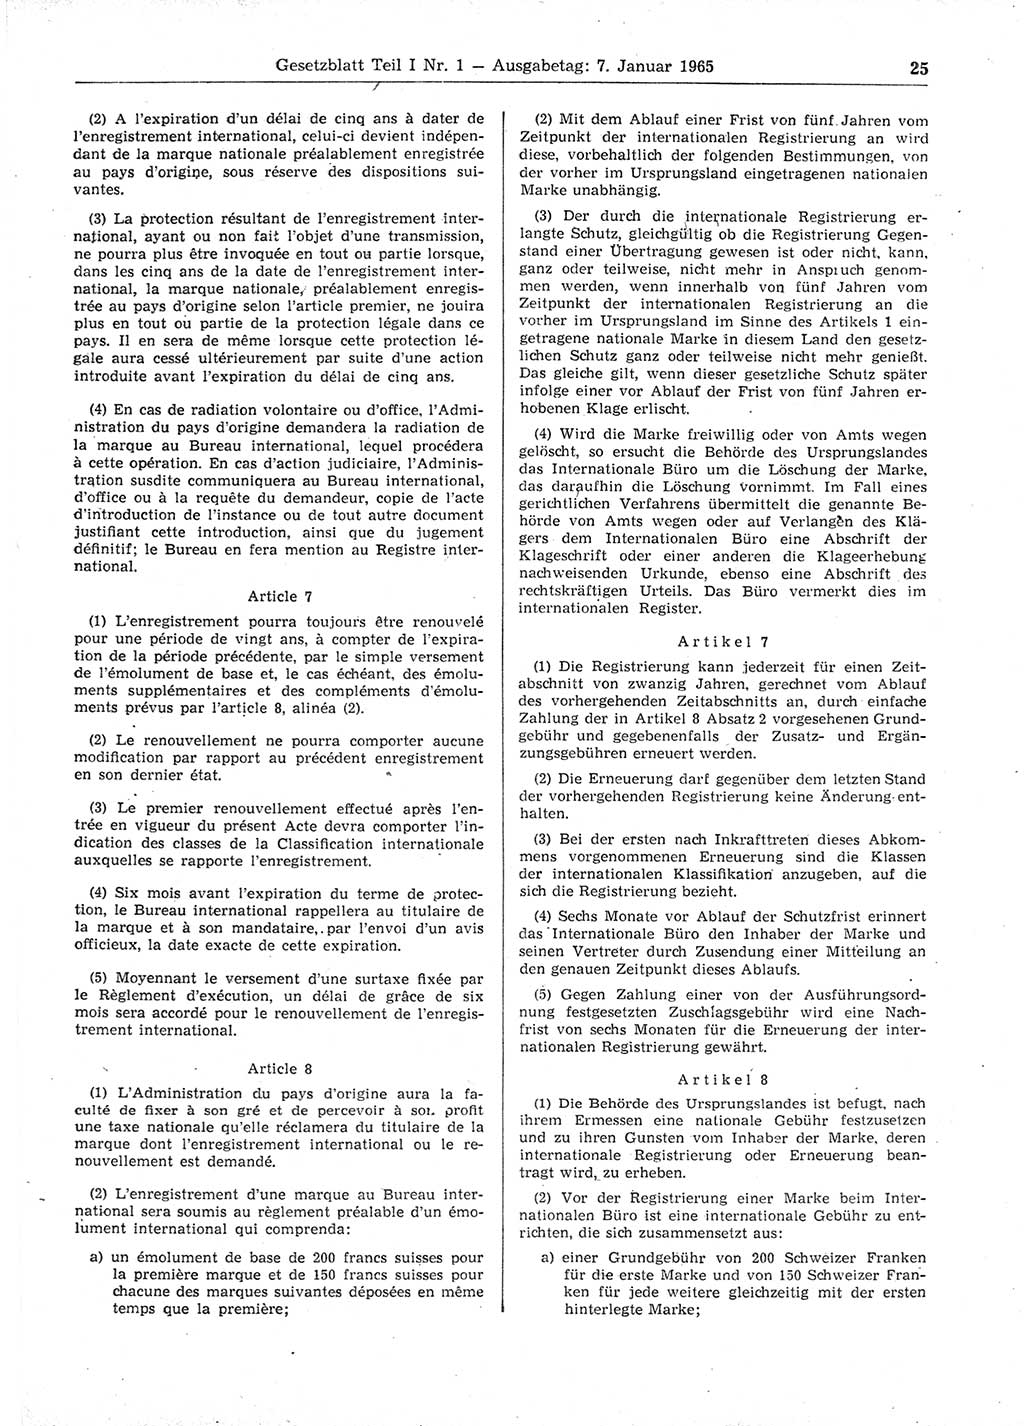 Gesetzblatt (GBl.) der Deutschen Demokratischen Republik (DDR) Teil Ⅰ 1965, Seite 25 (GBl. DDR Ⅰ 1965, S. 25)